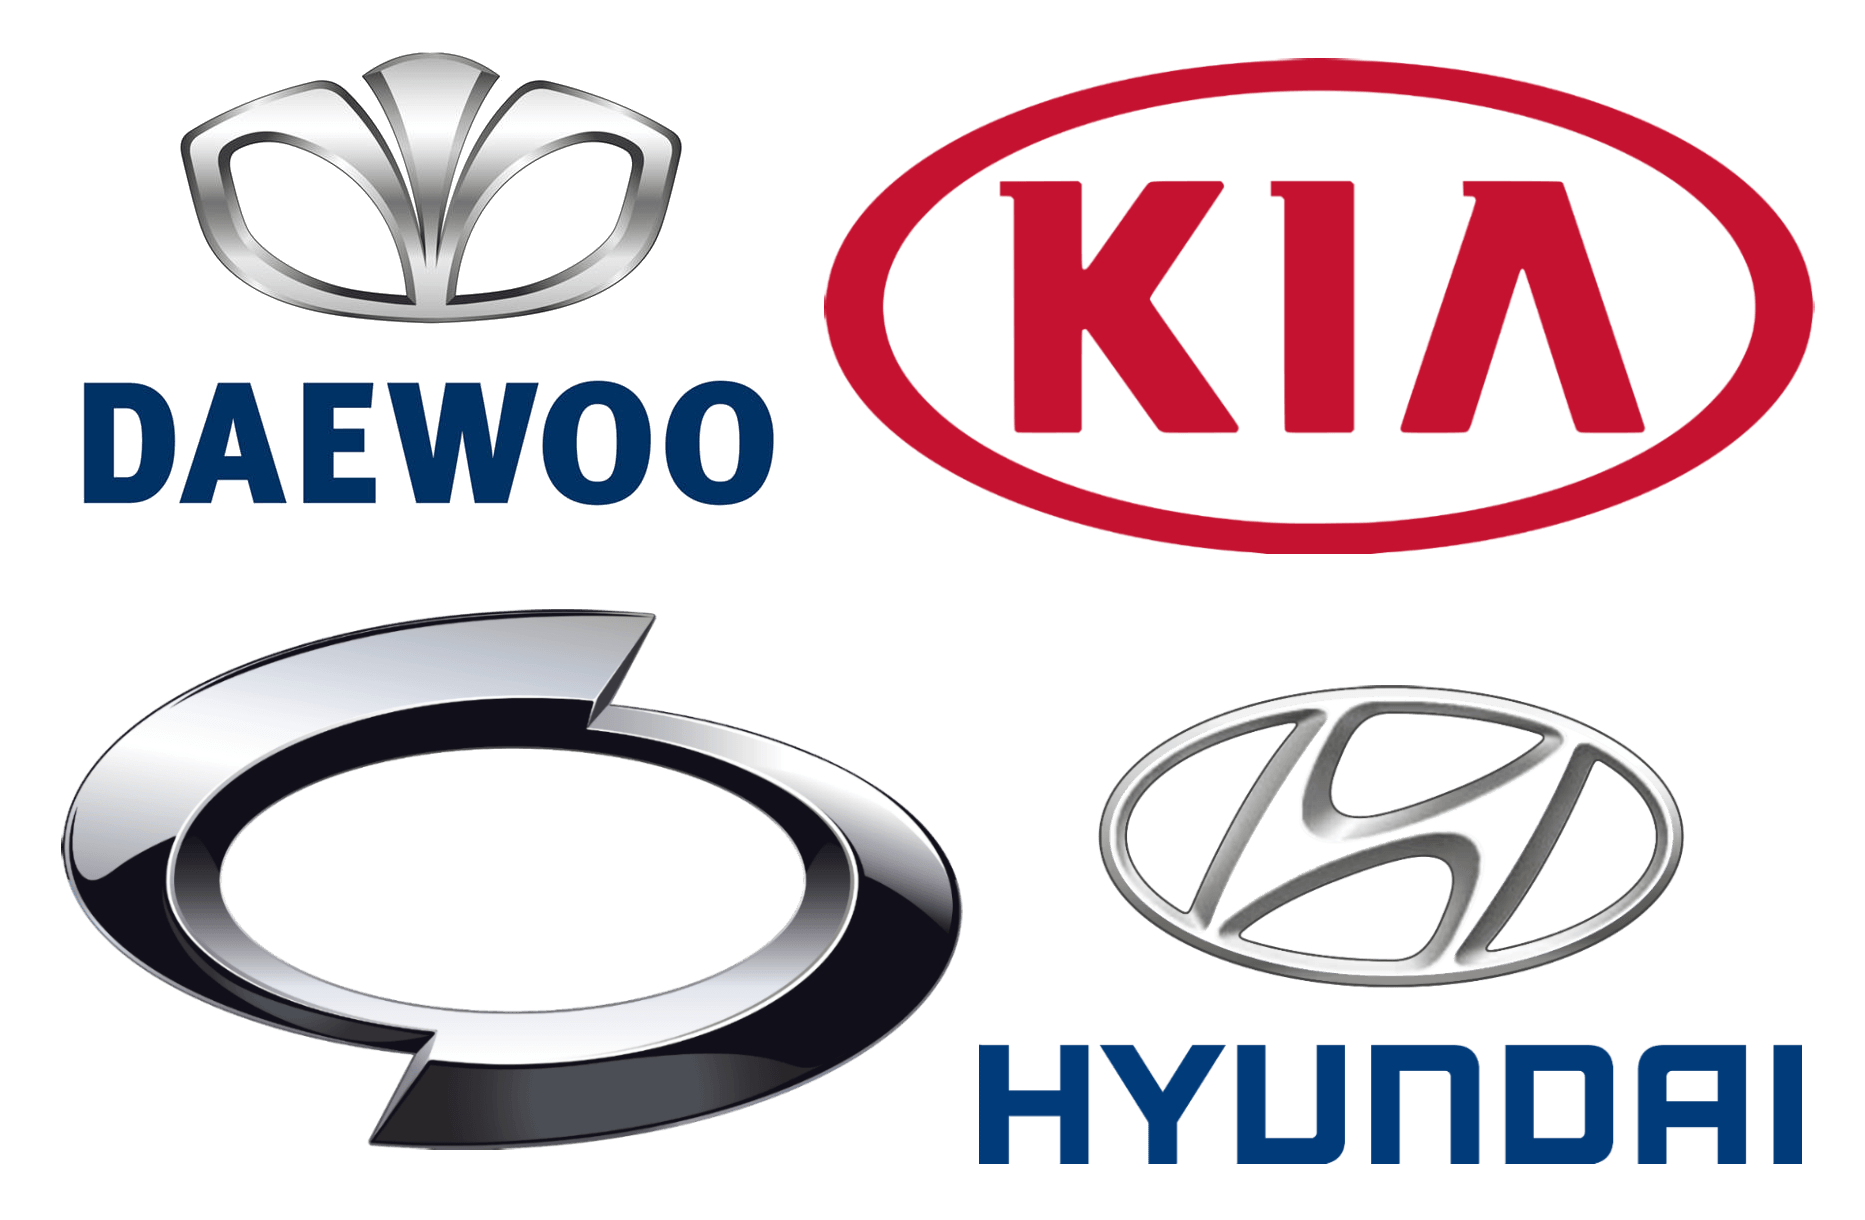 Auto Asset Logo - Korean Car Brands, Companies and Manufacturers | Car Brand Names.com